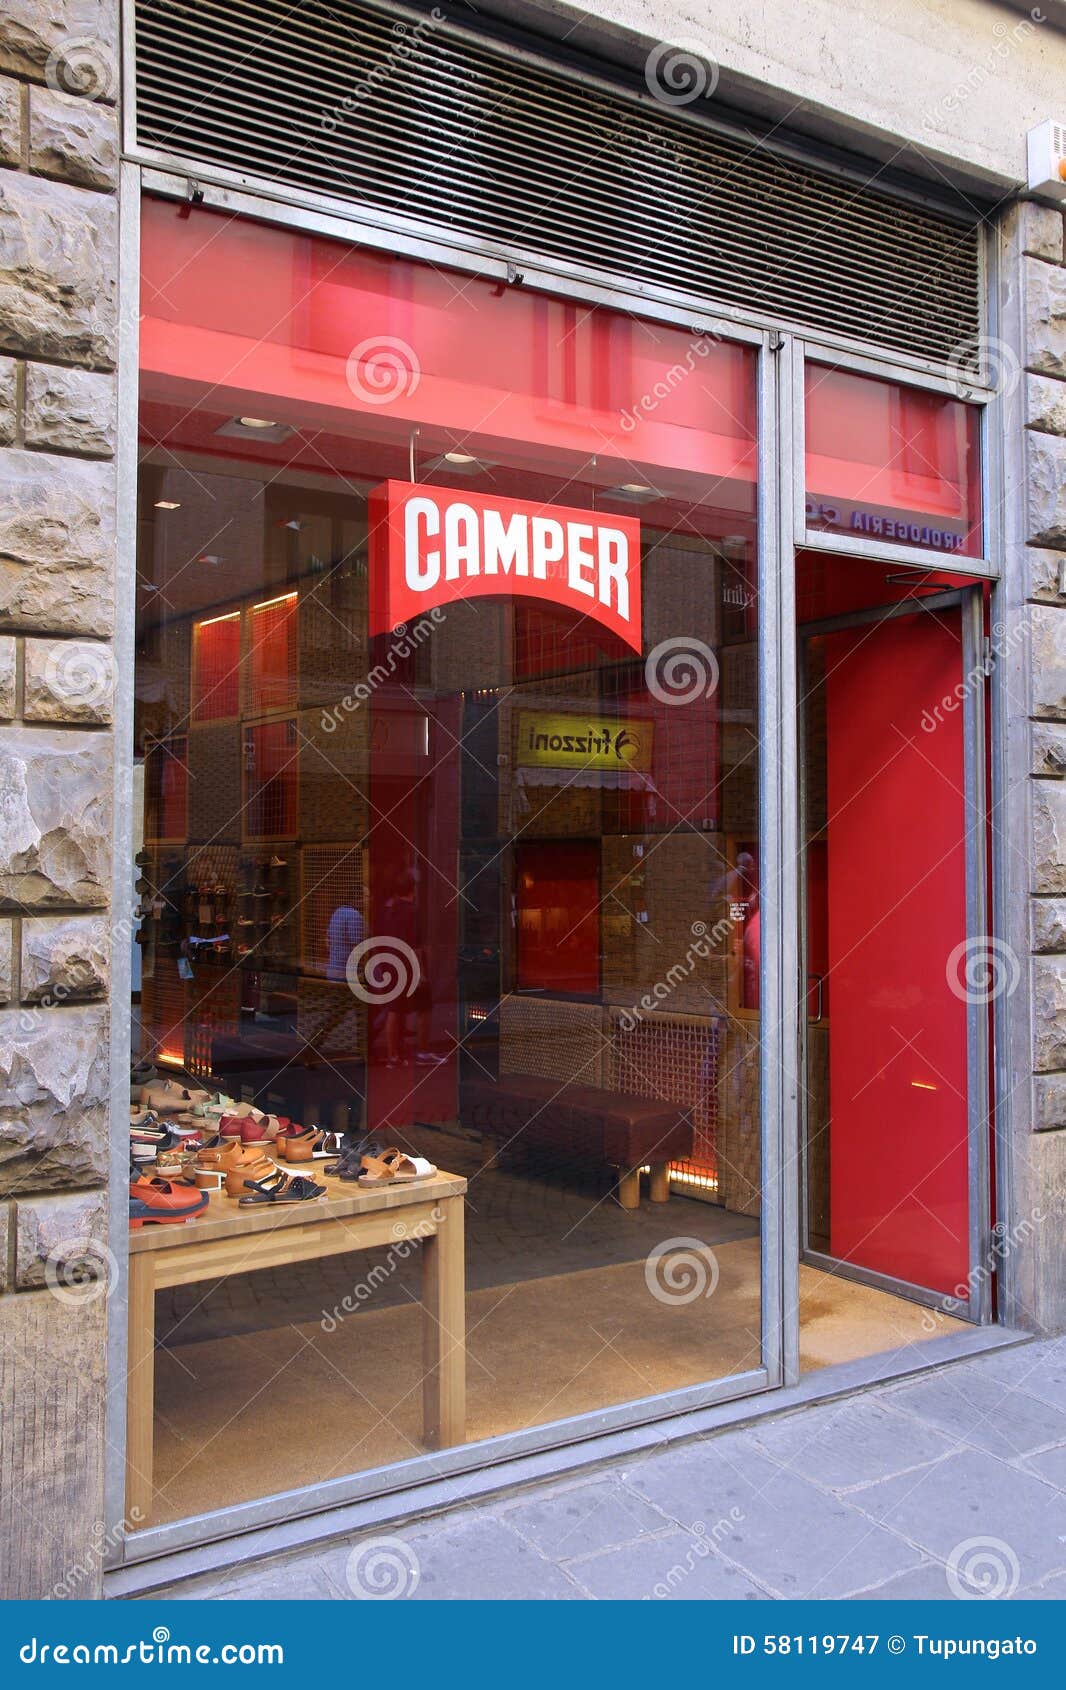 camper shoe store